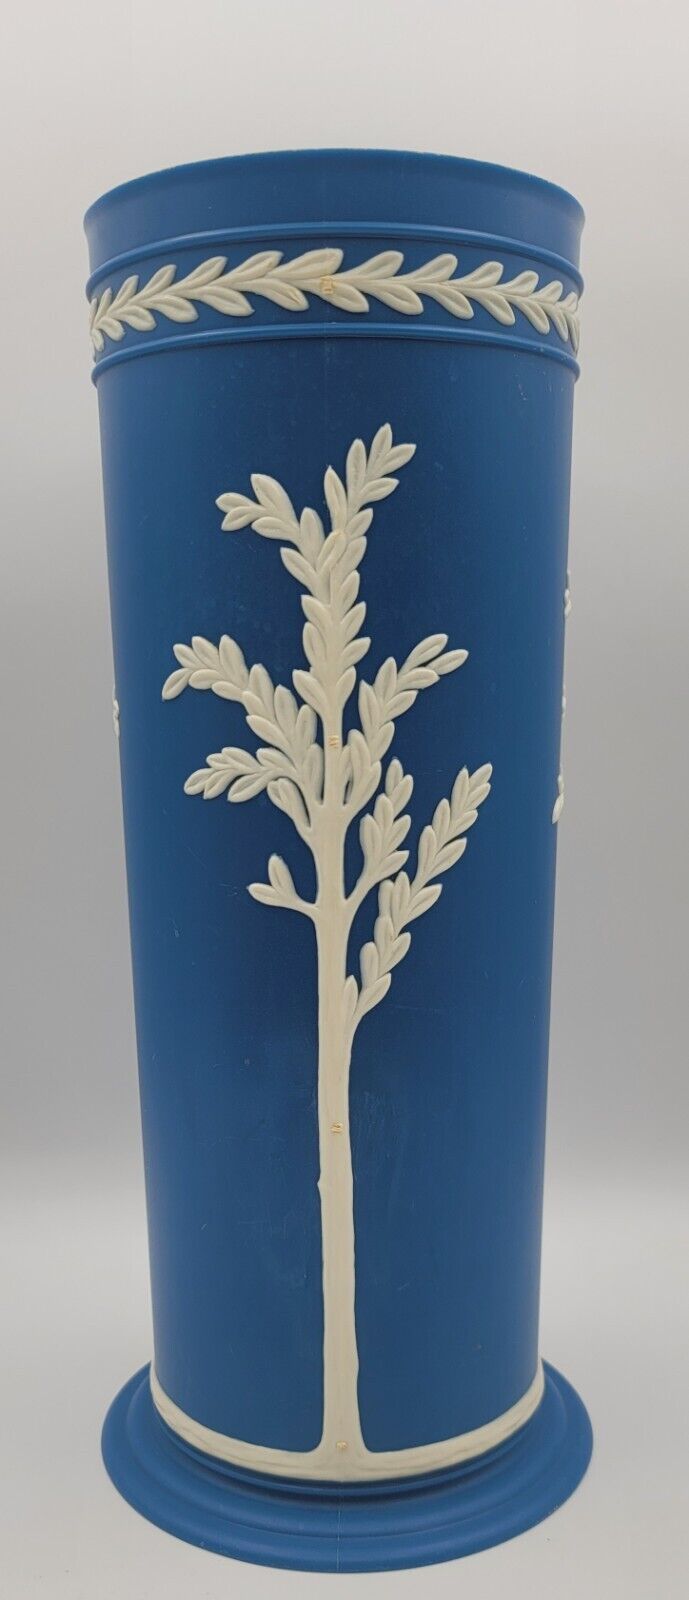 Vintage Fesco Plastic Decorative Vase Mayfair Blue Retro Wedgwood LOOK-ALIKE